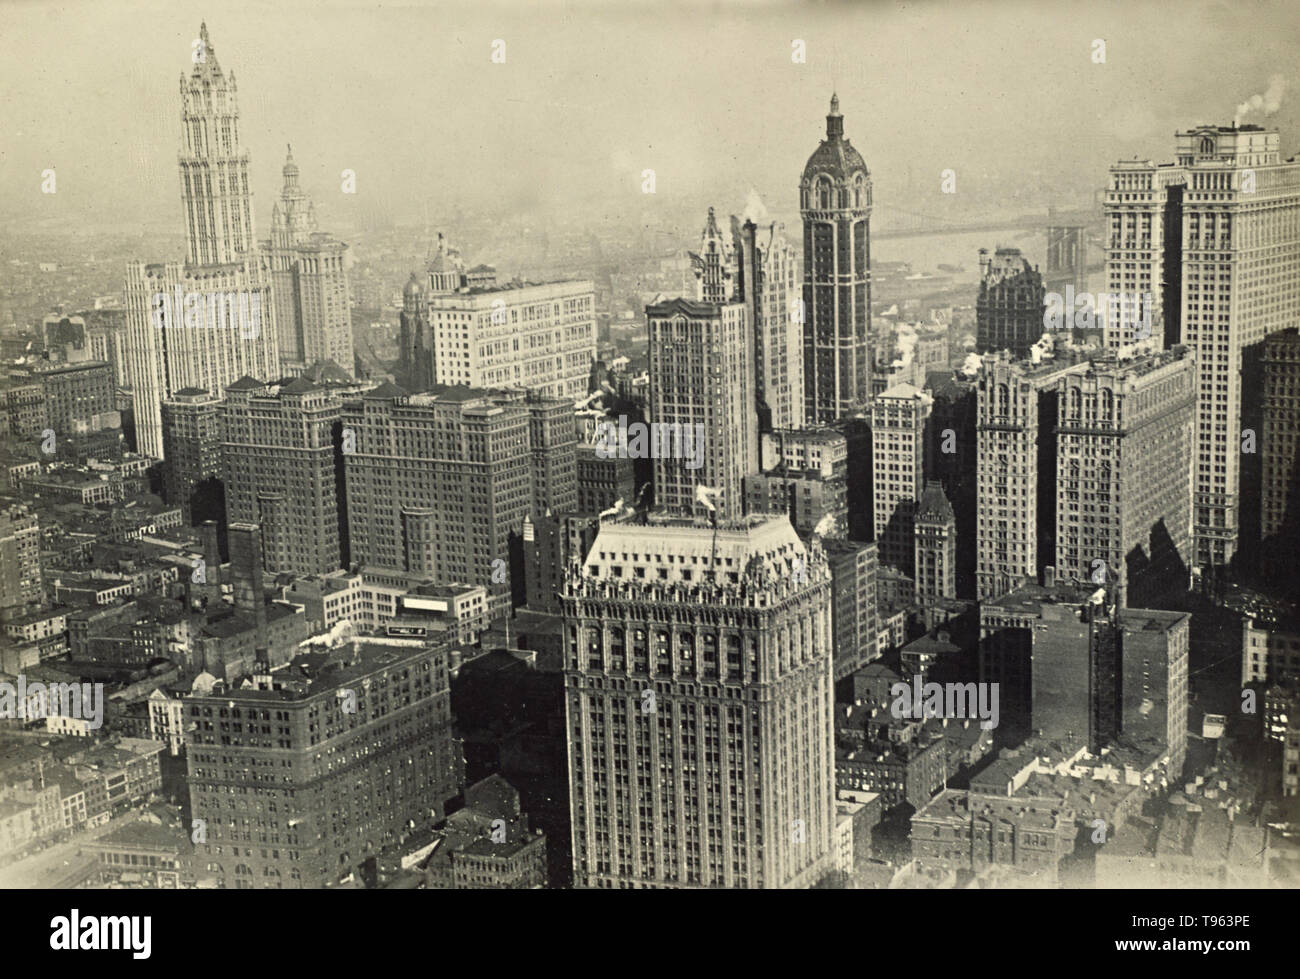 Antenna di New York del quartiere finanziario, mostrando il Woolworth Building a sinistra. Il Ponte di Brooklyn può essere visto in lontananza. Fedele Azari (italiano, 1895 - 1930); Italia; 1914 - 1929; gelatina silver stampa. Foto Stock